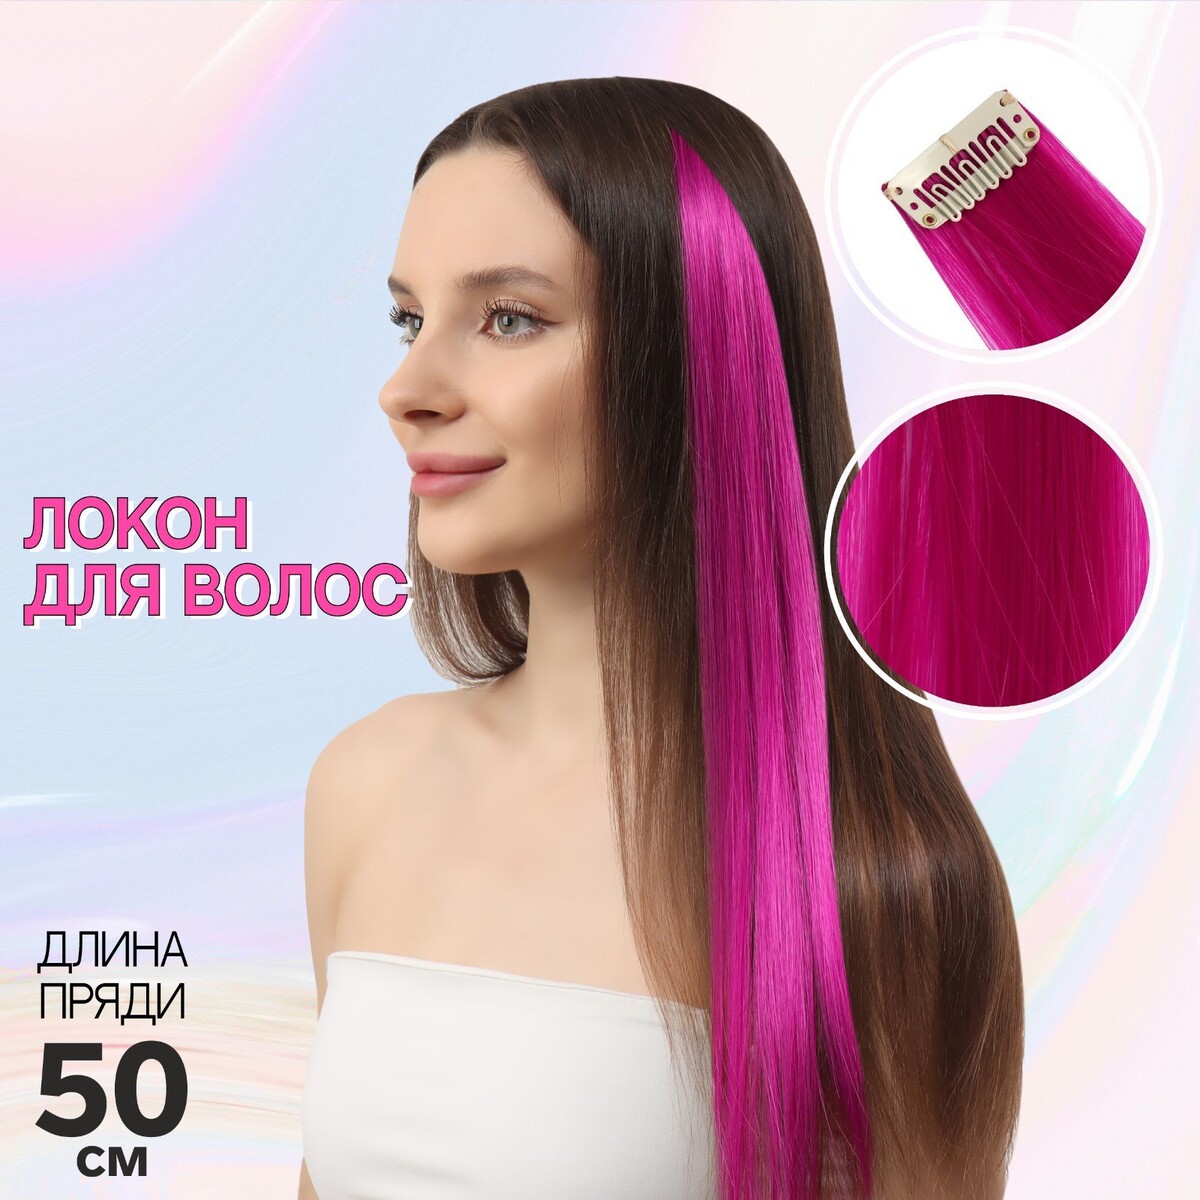 Локон накладной, прямой волос, на заколке, 50 см, 5 гр, цвет фиолетовый локон накладной единорог прямой волос на заколке 40 см микс